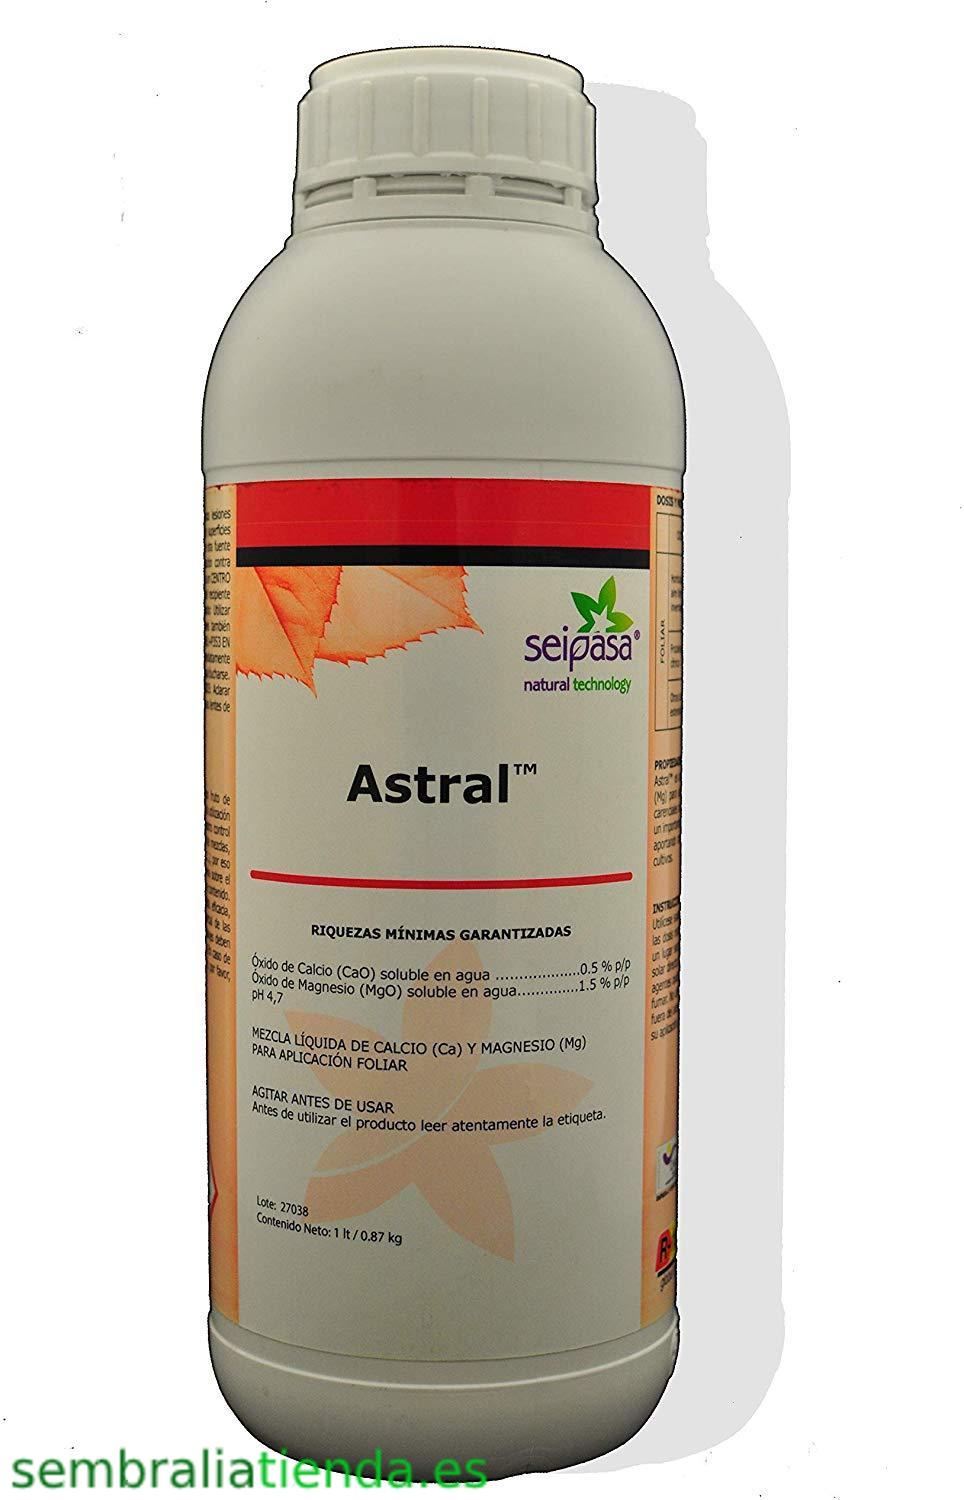 Astral - Insecticida y Fungicida